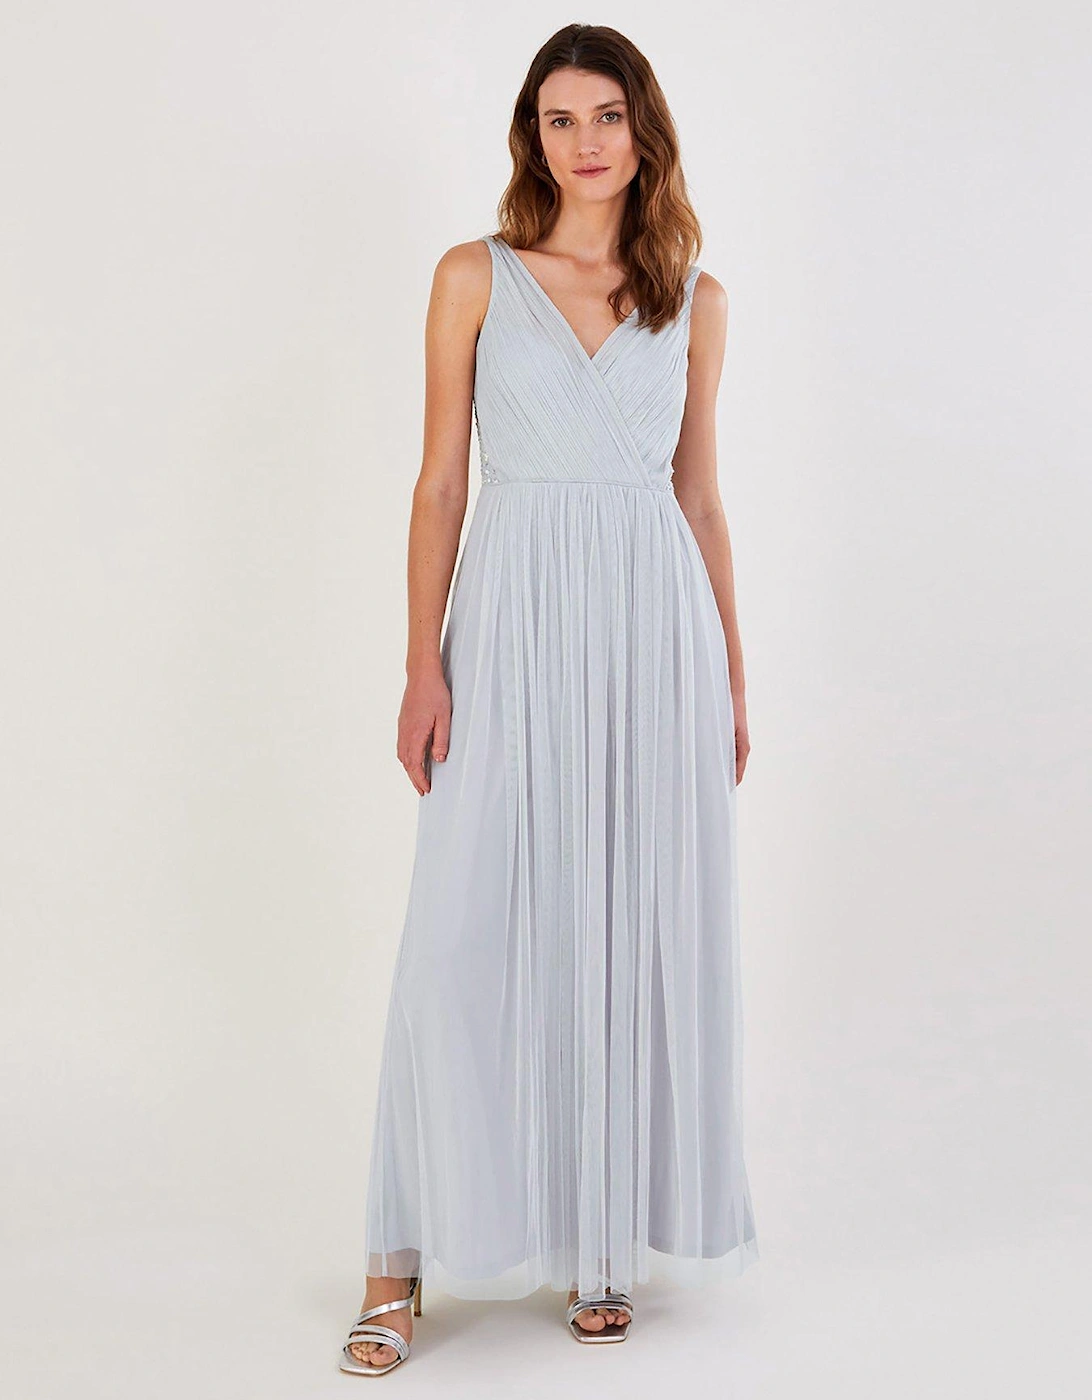 Anne Mesh Maxi Bridesmaid Dress - Silver, 2 of 1